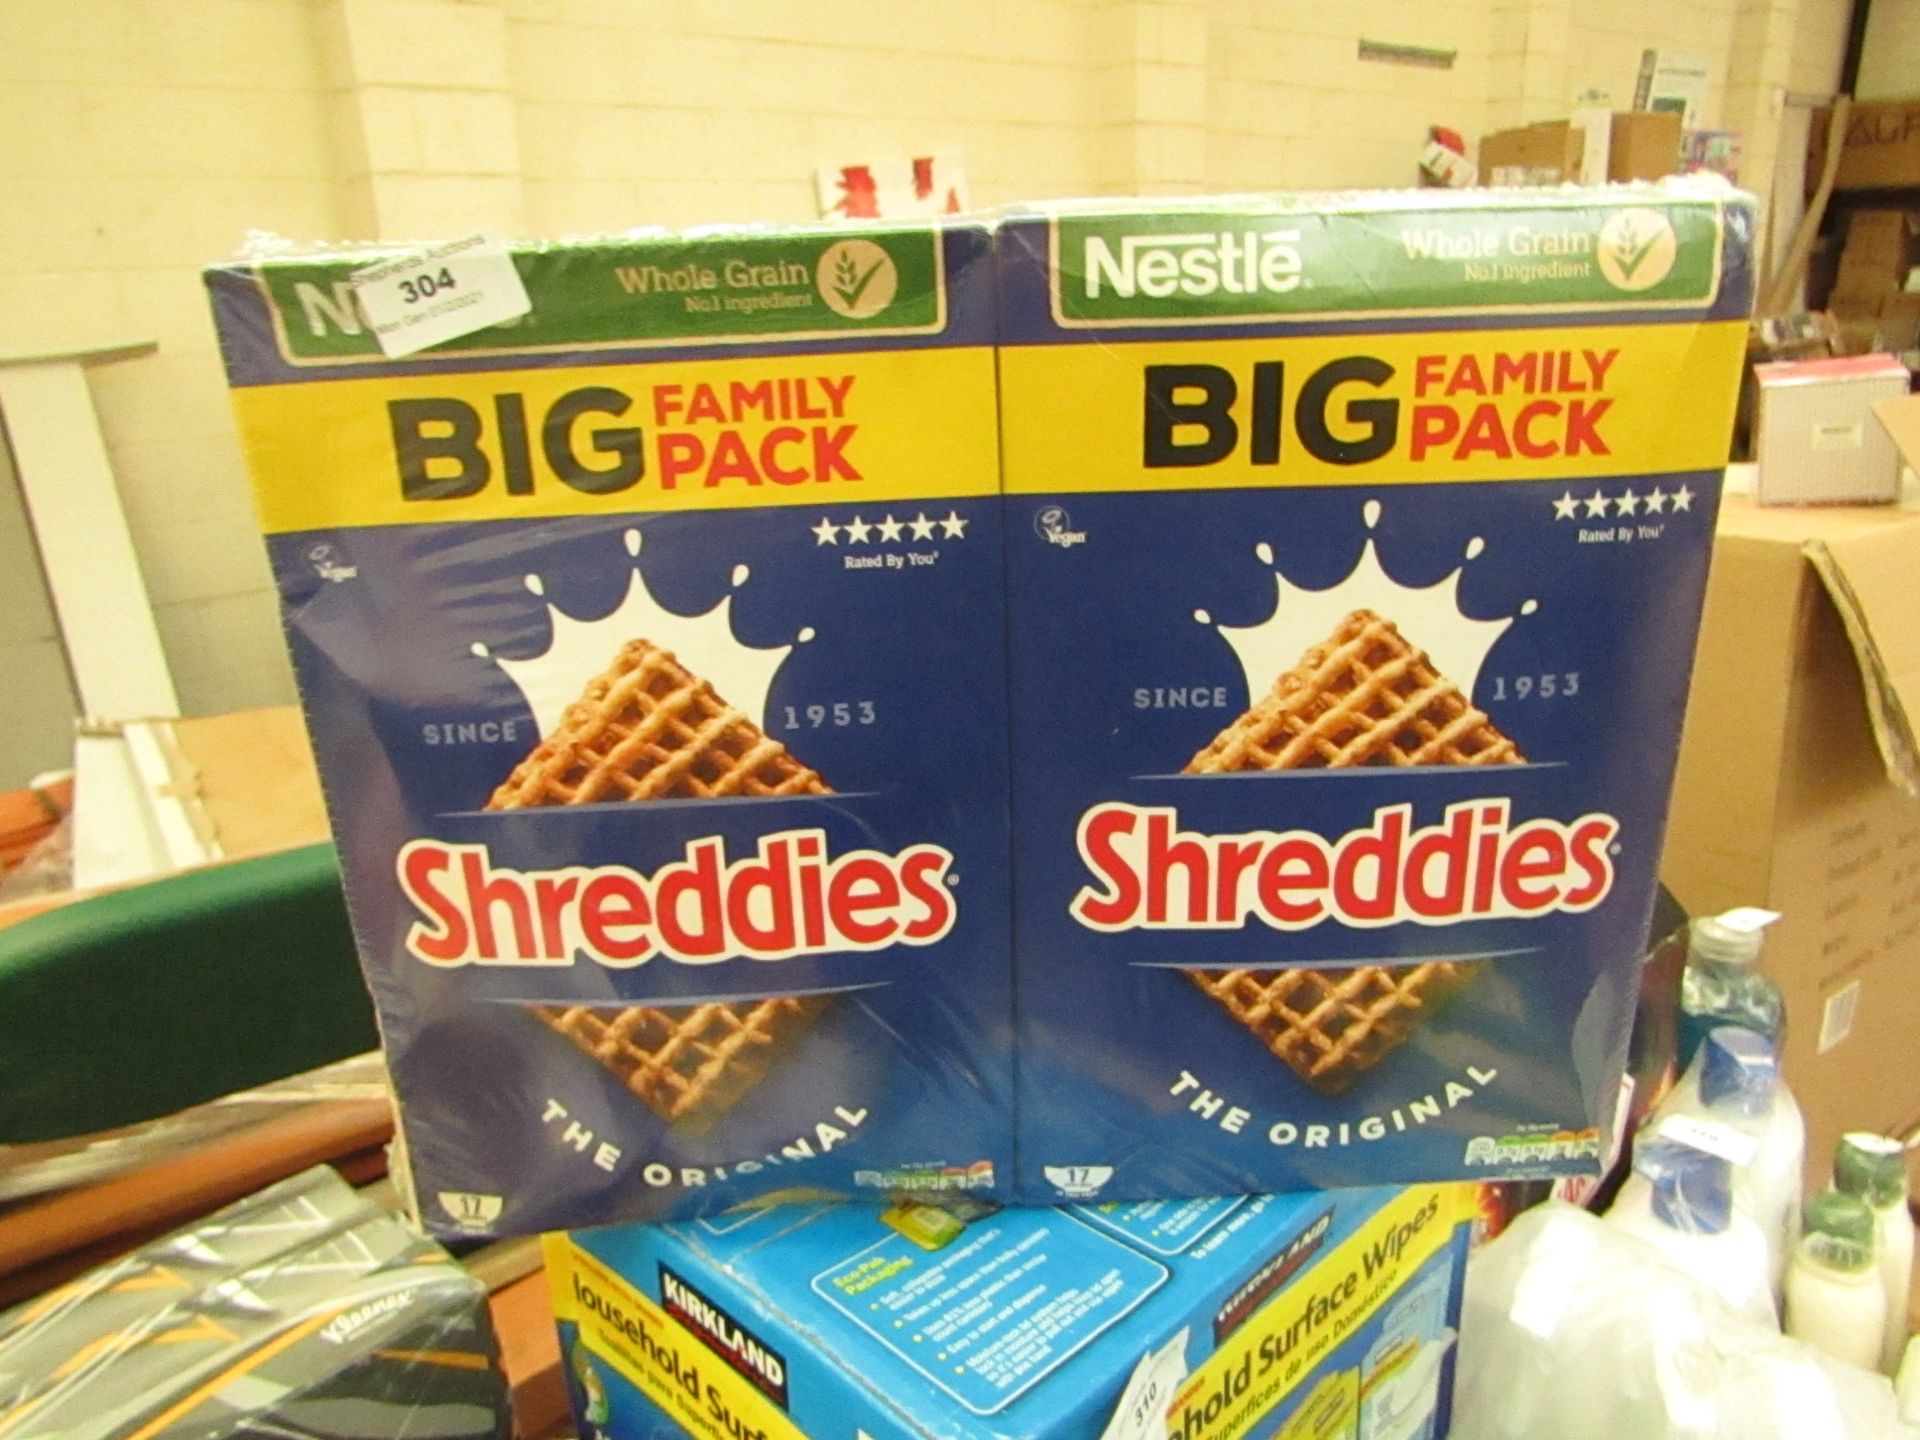 2x 700g Nestle - The original Shreddies Cereal - Best before 07/2021 - Unused & Packaged